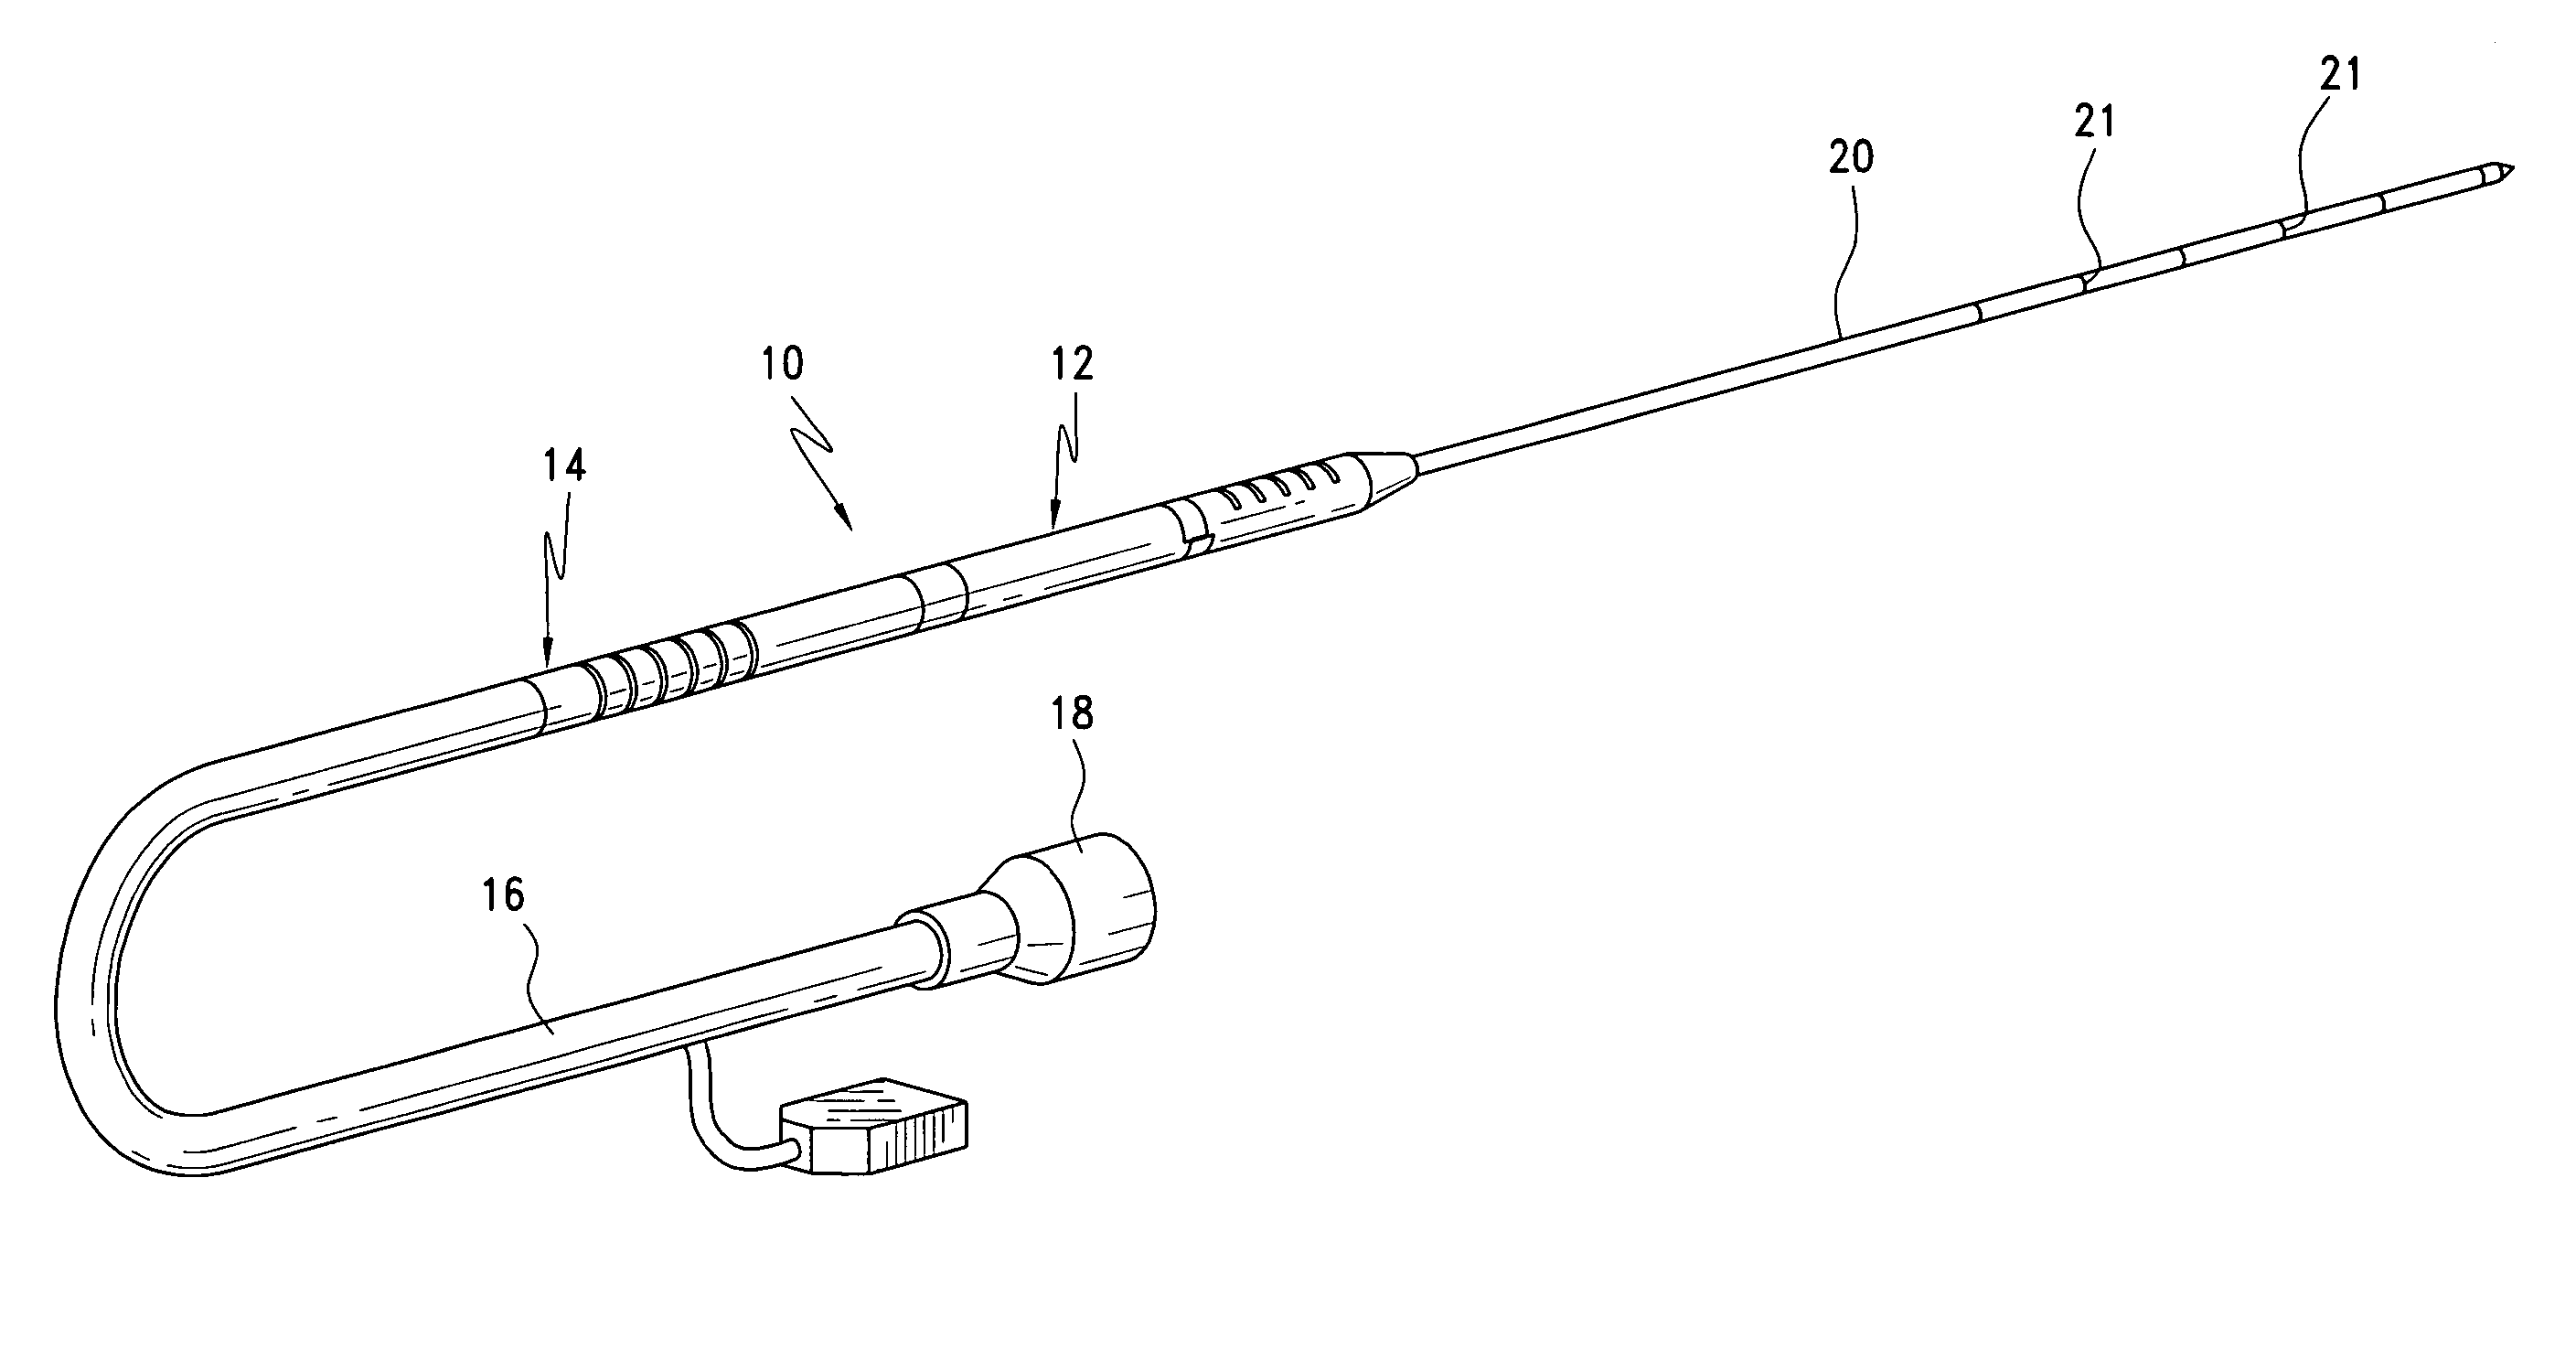 Detachable cryosurgical probe with breakaway handle